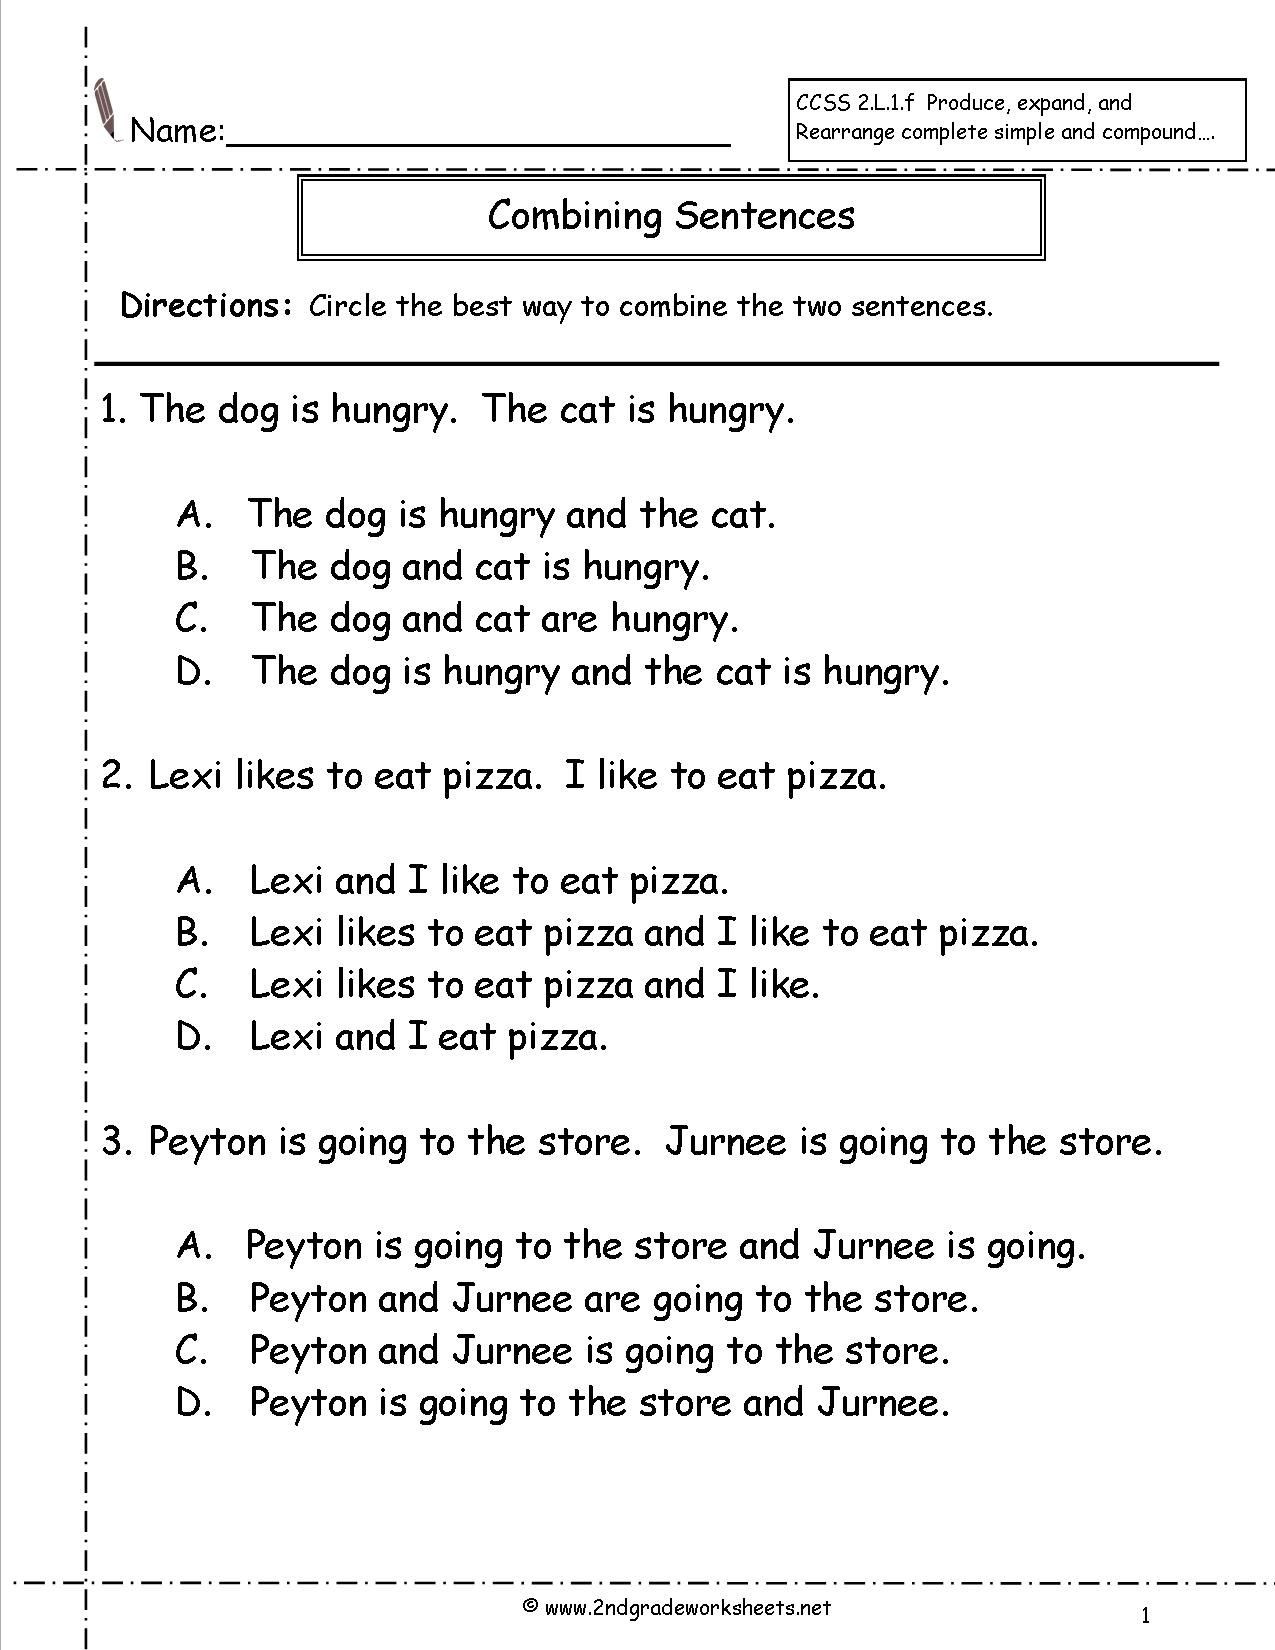 Worksheet On Sentences For Class 6